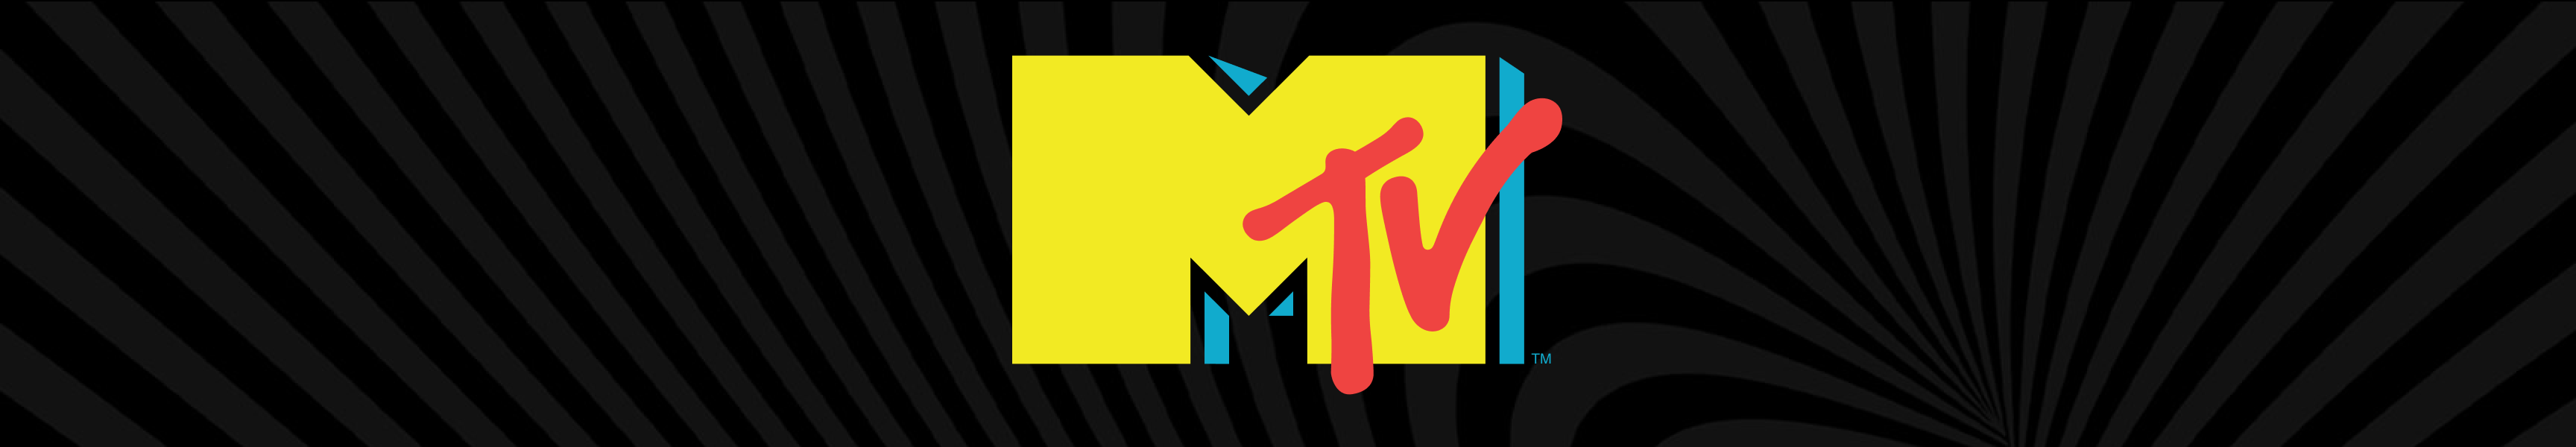 Gafas de sol MTV